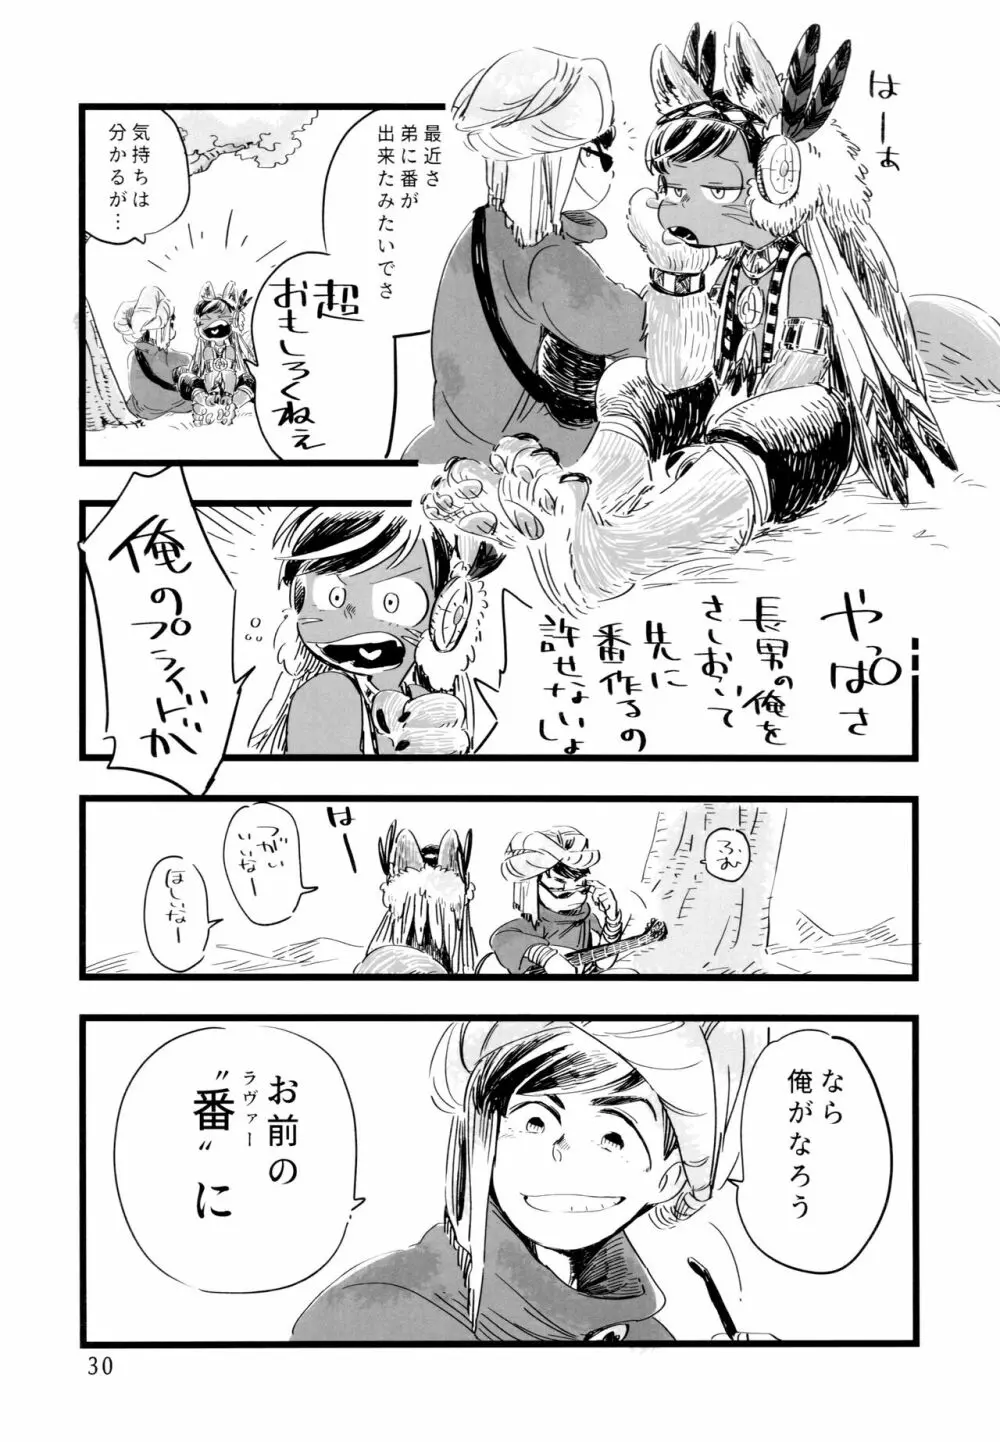 砂糖の蜂蜜煮 (しろ) ジンロウとツノみんぞく (おそ松さん) - page30